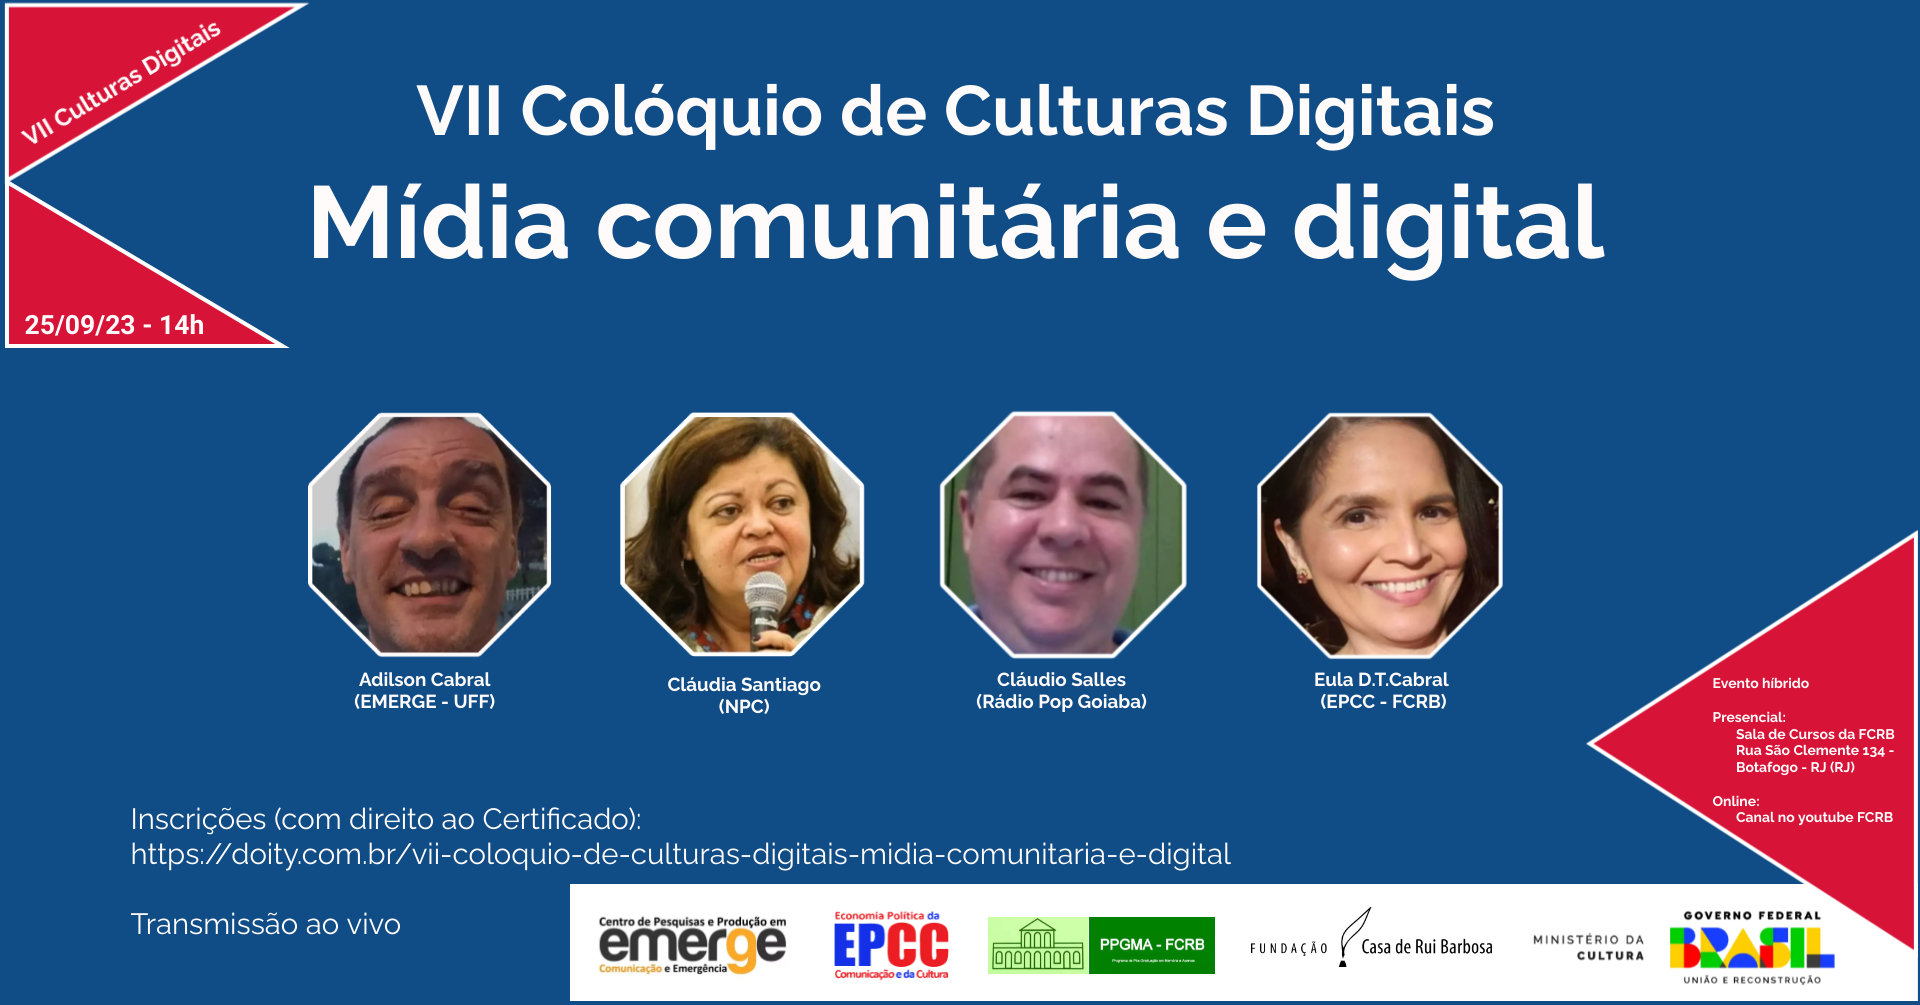 VII Colóquio de Culturas Digitais Mídia comunitária e digital